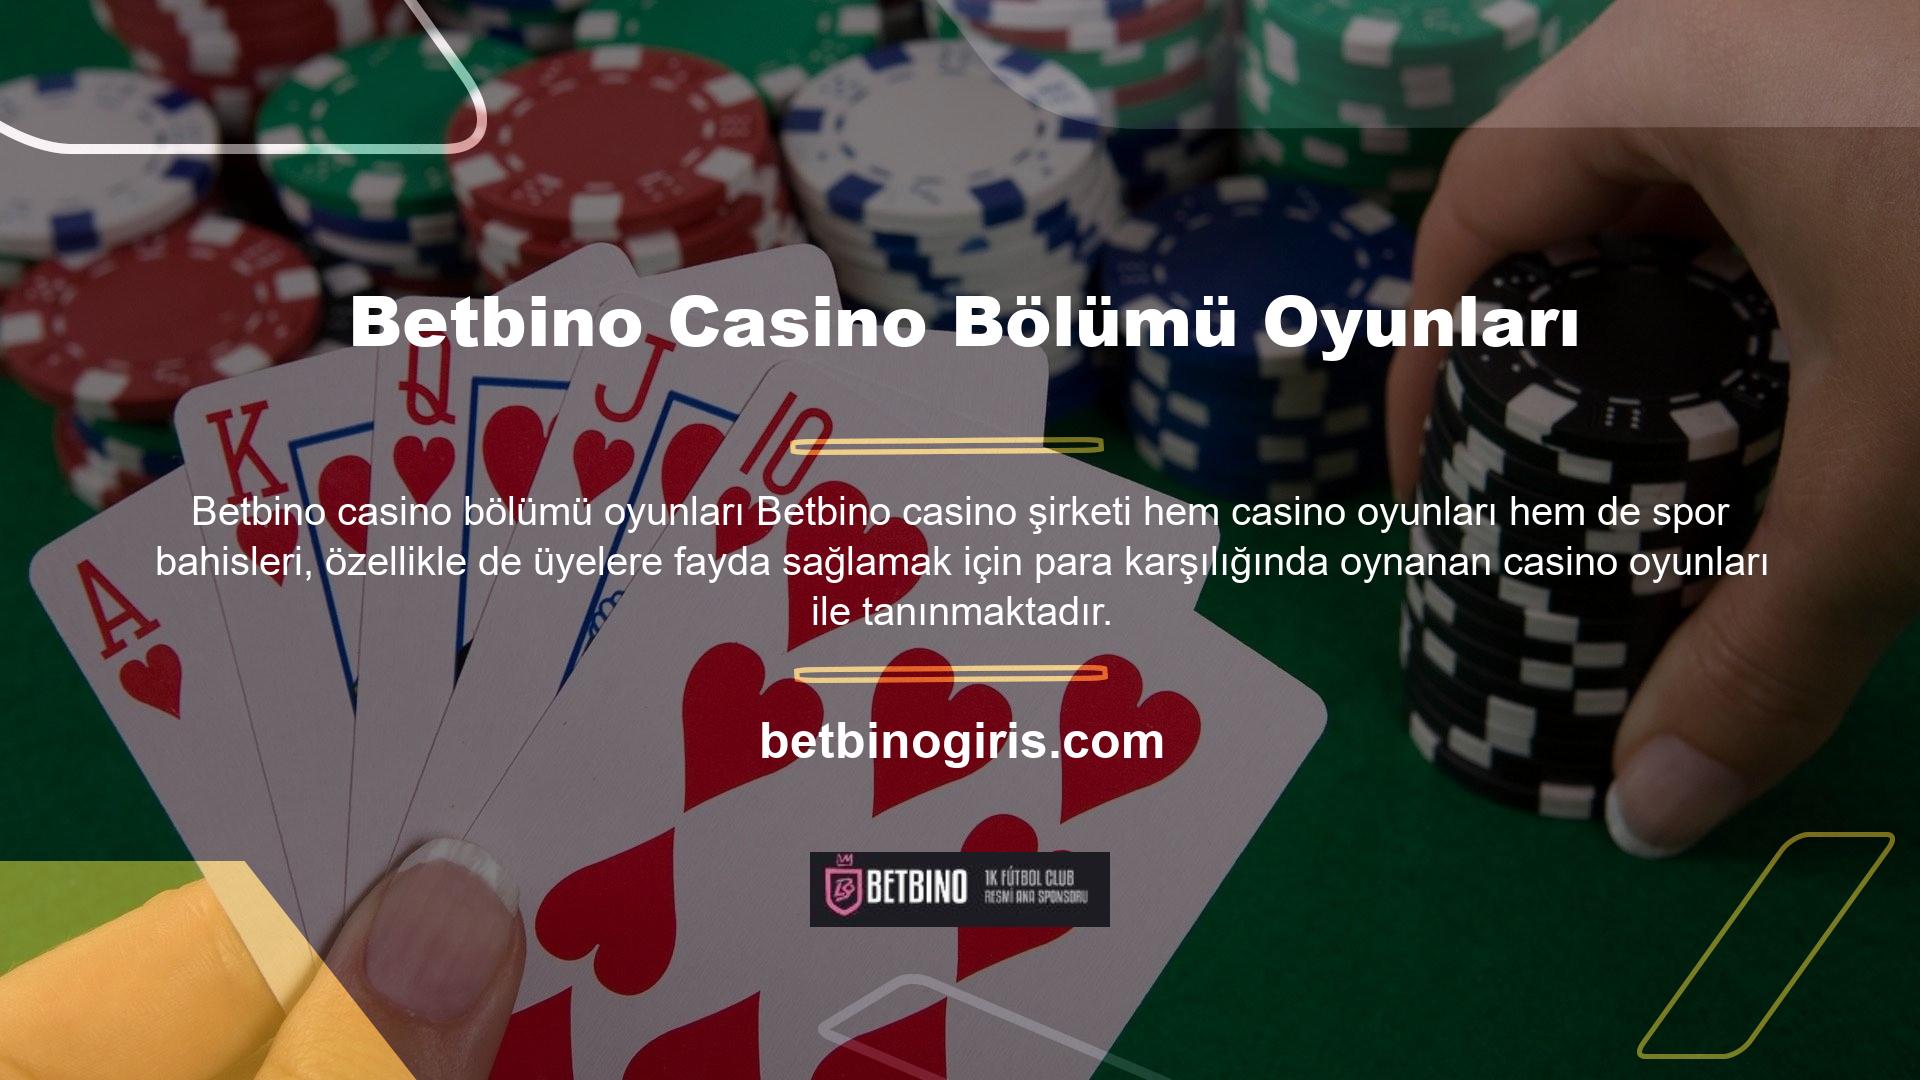 Casino oyunlarından biri olan rulet ve poker gibi masa oyunları şu anda Betbino en çok kazandıran oyun türüdür